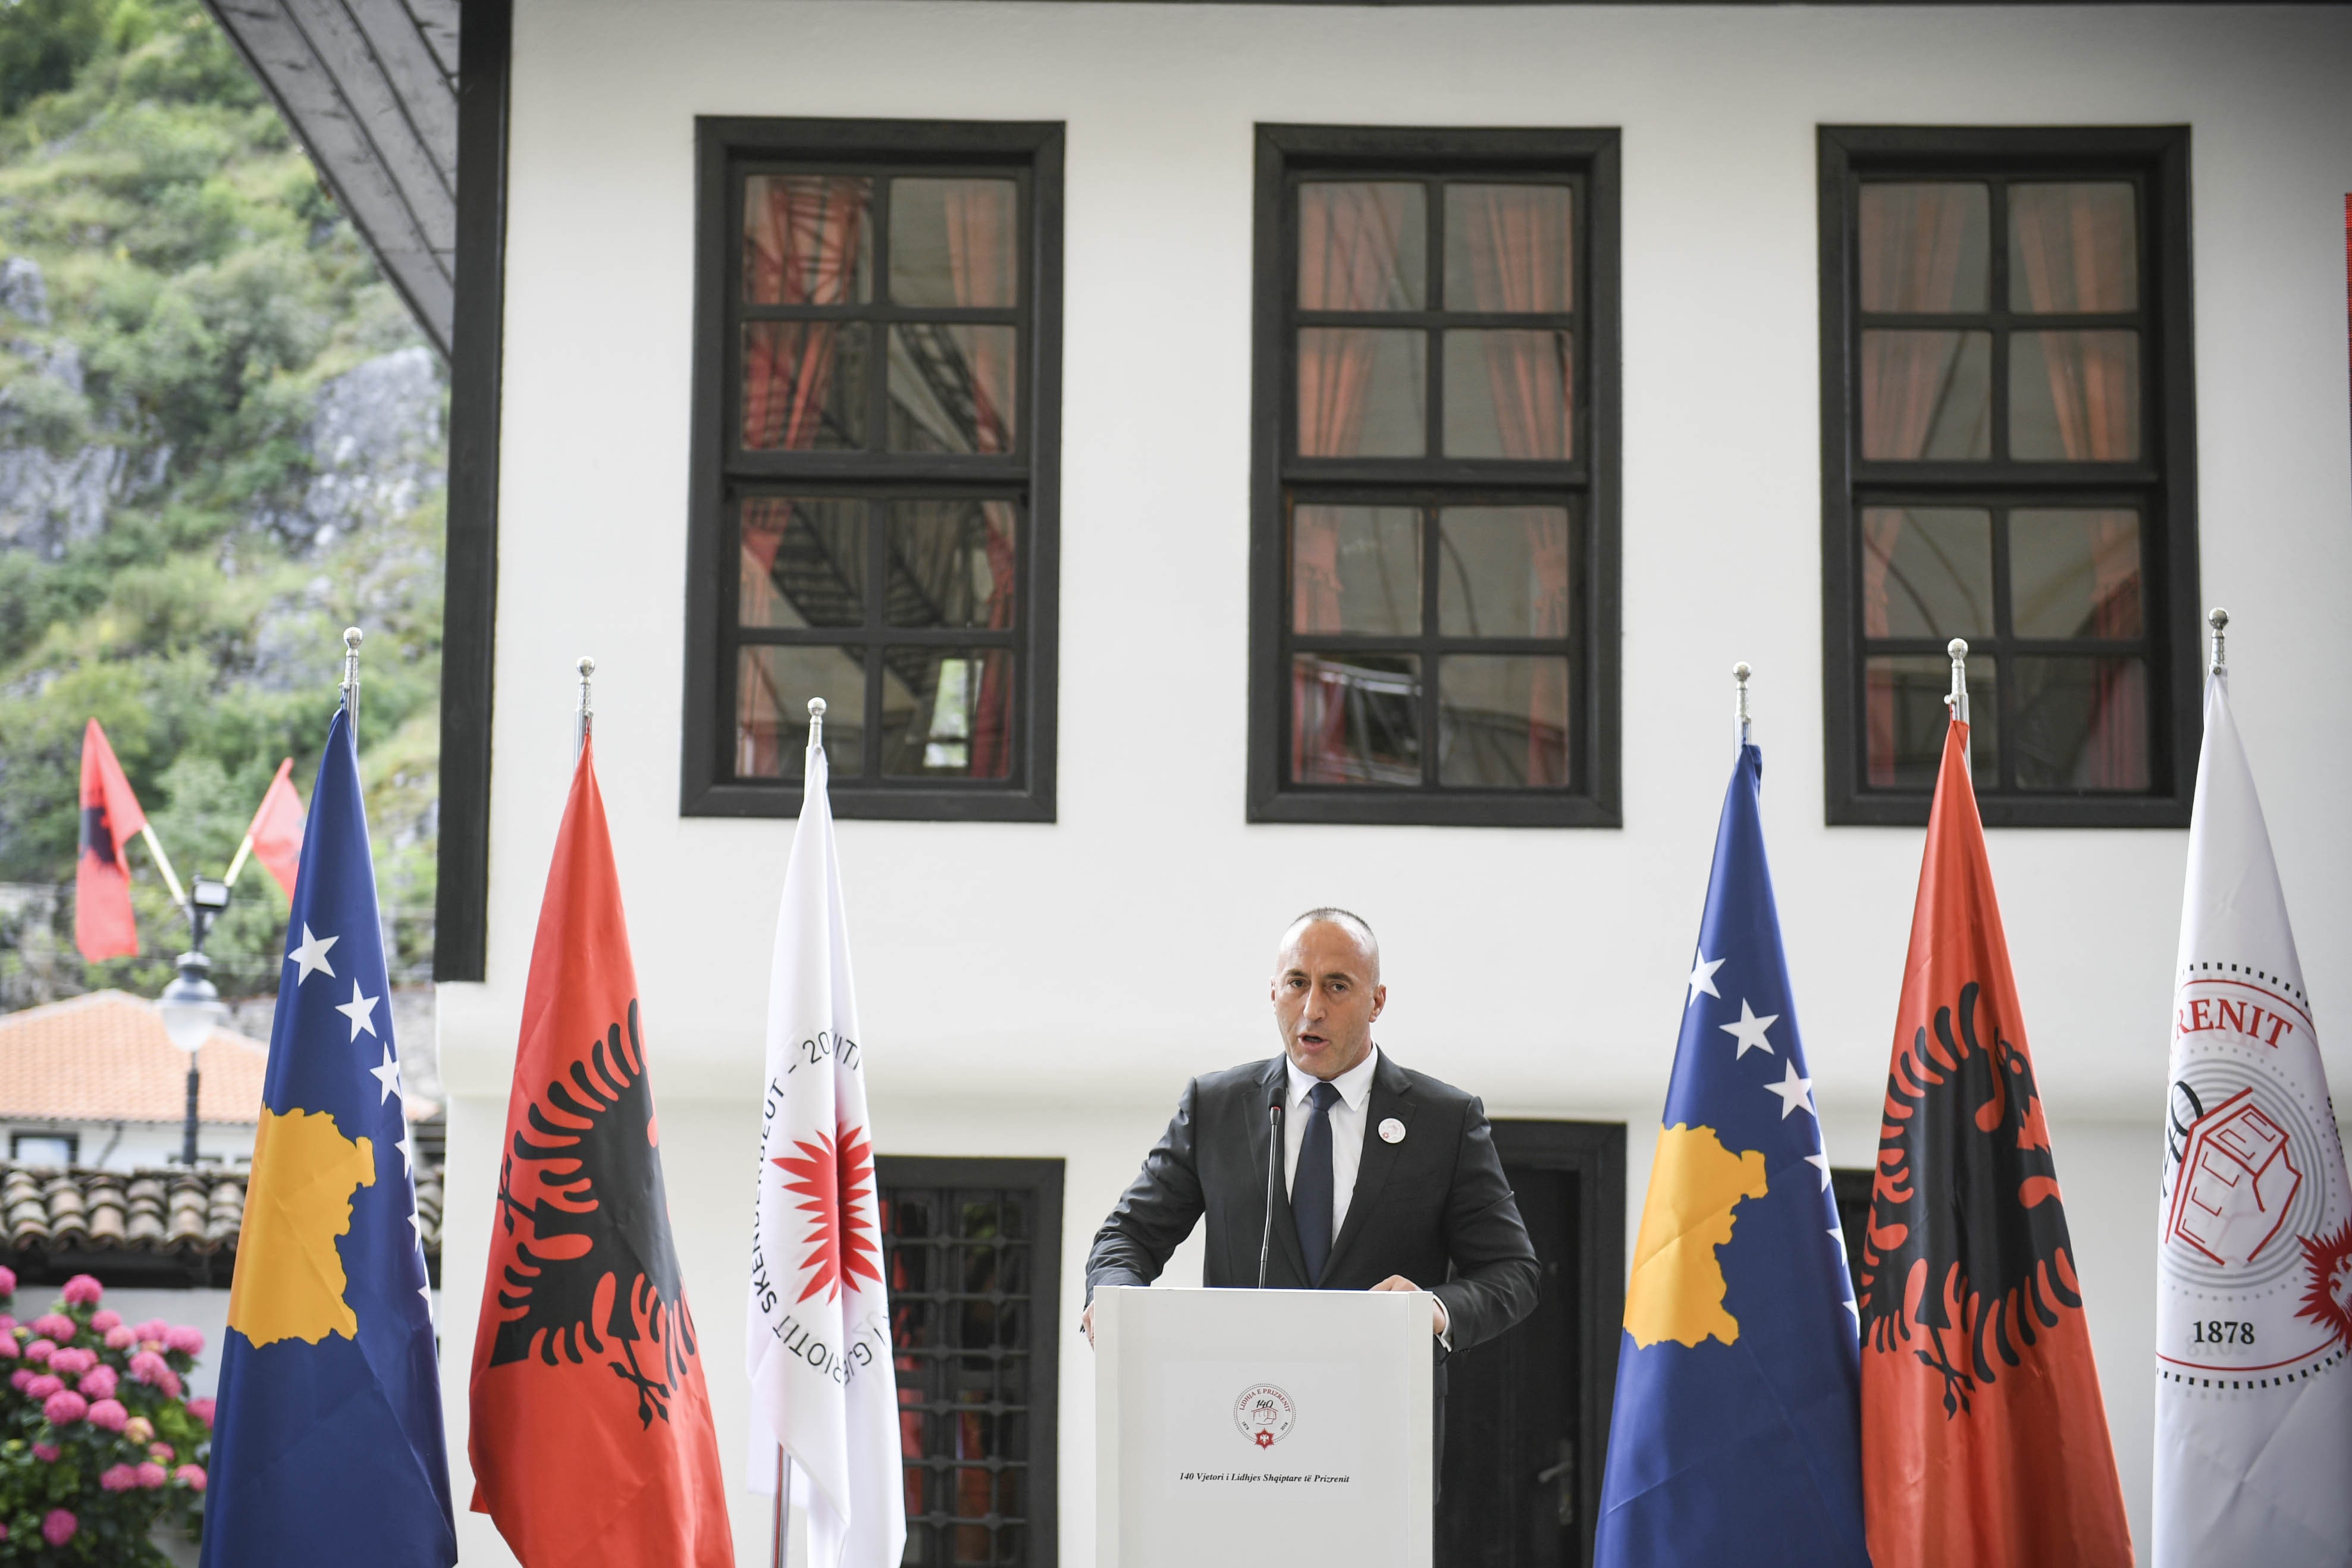 Mbahet Akademia Solemne dedikuar 140 vjetorit të Lidhjes Shqiptare të Prizrenit